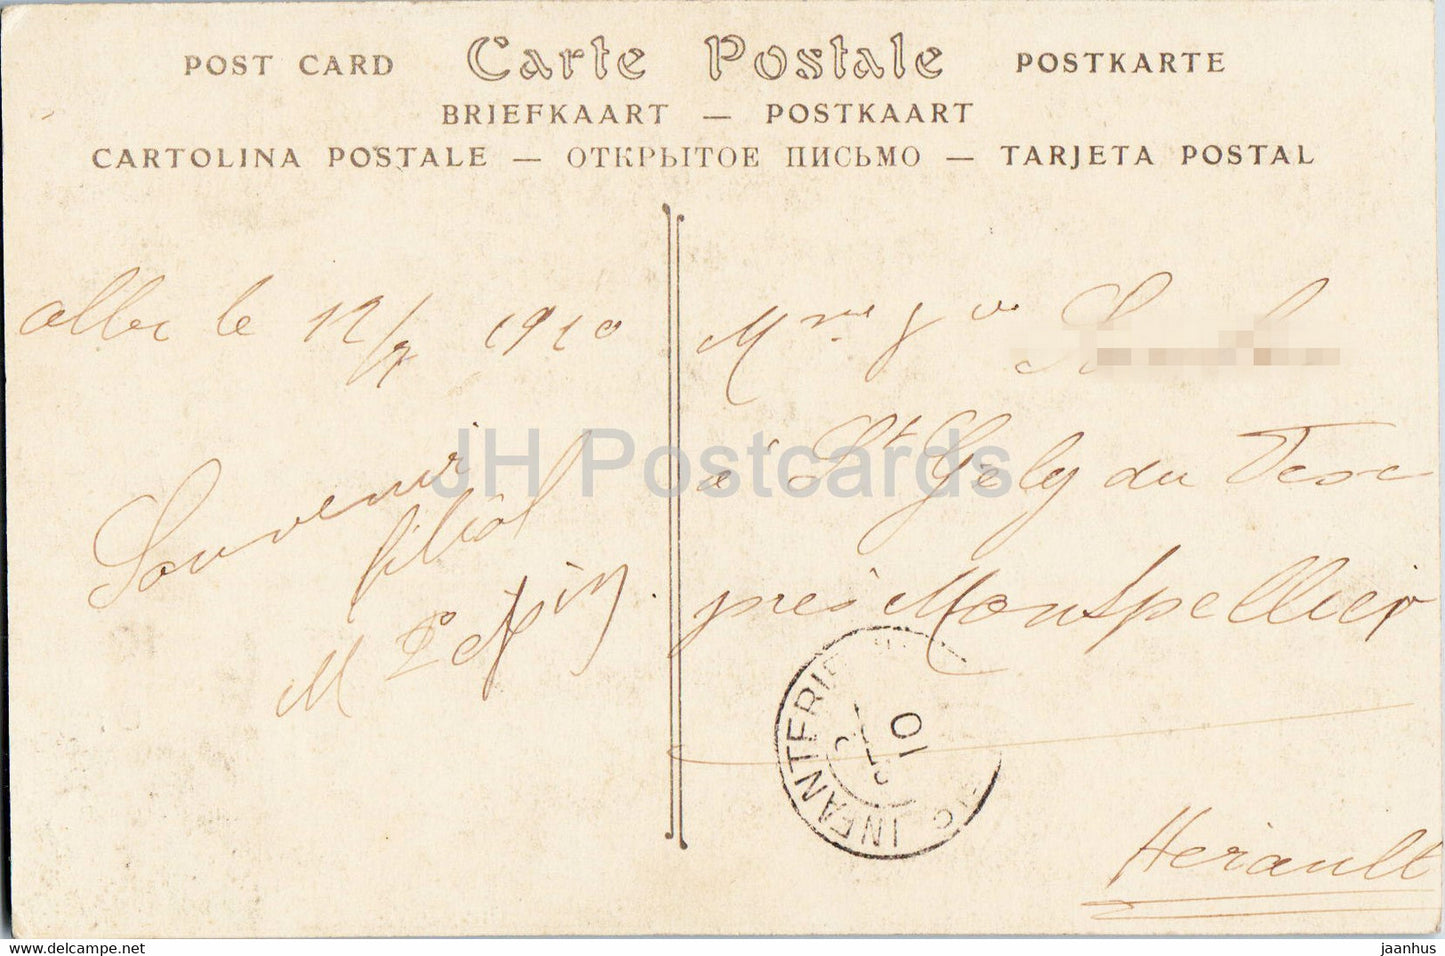 Albi - La Cathédrale les Orgues - cathédrale - carte postale ancienne - 1910 - France - occasion